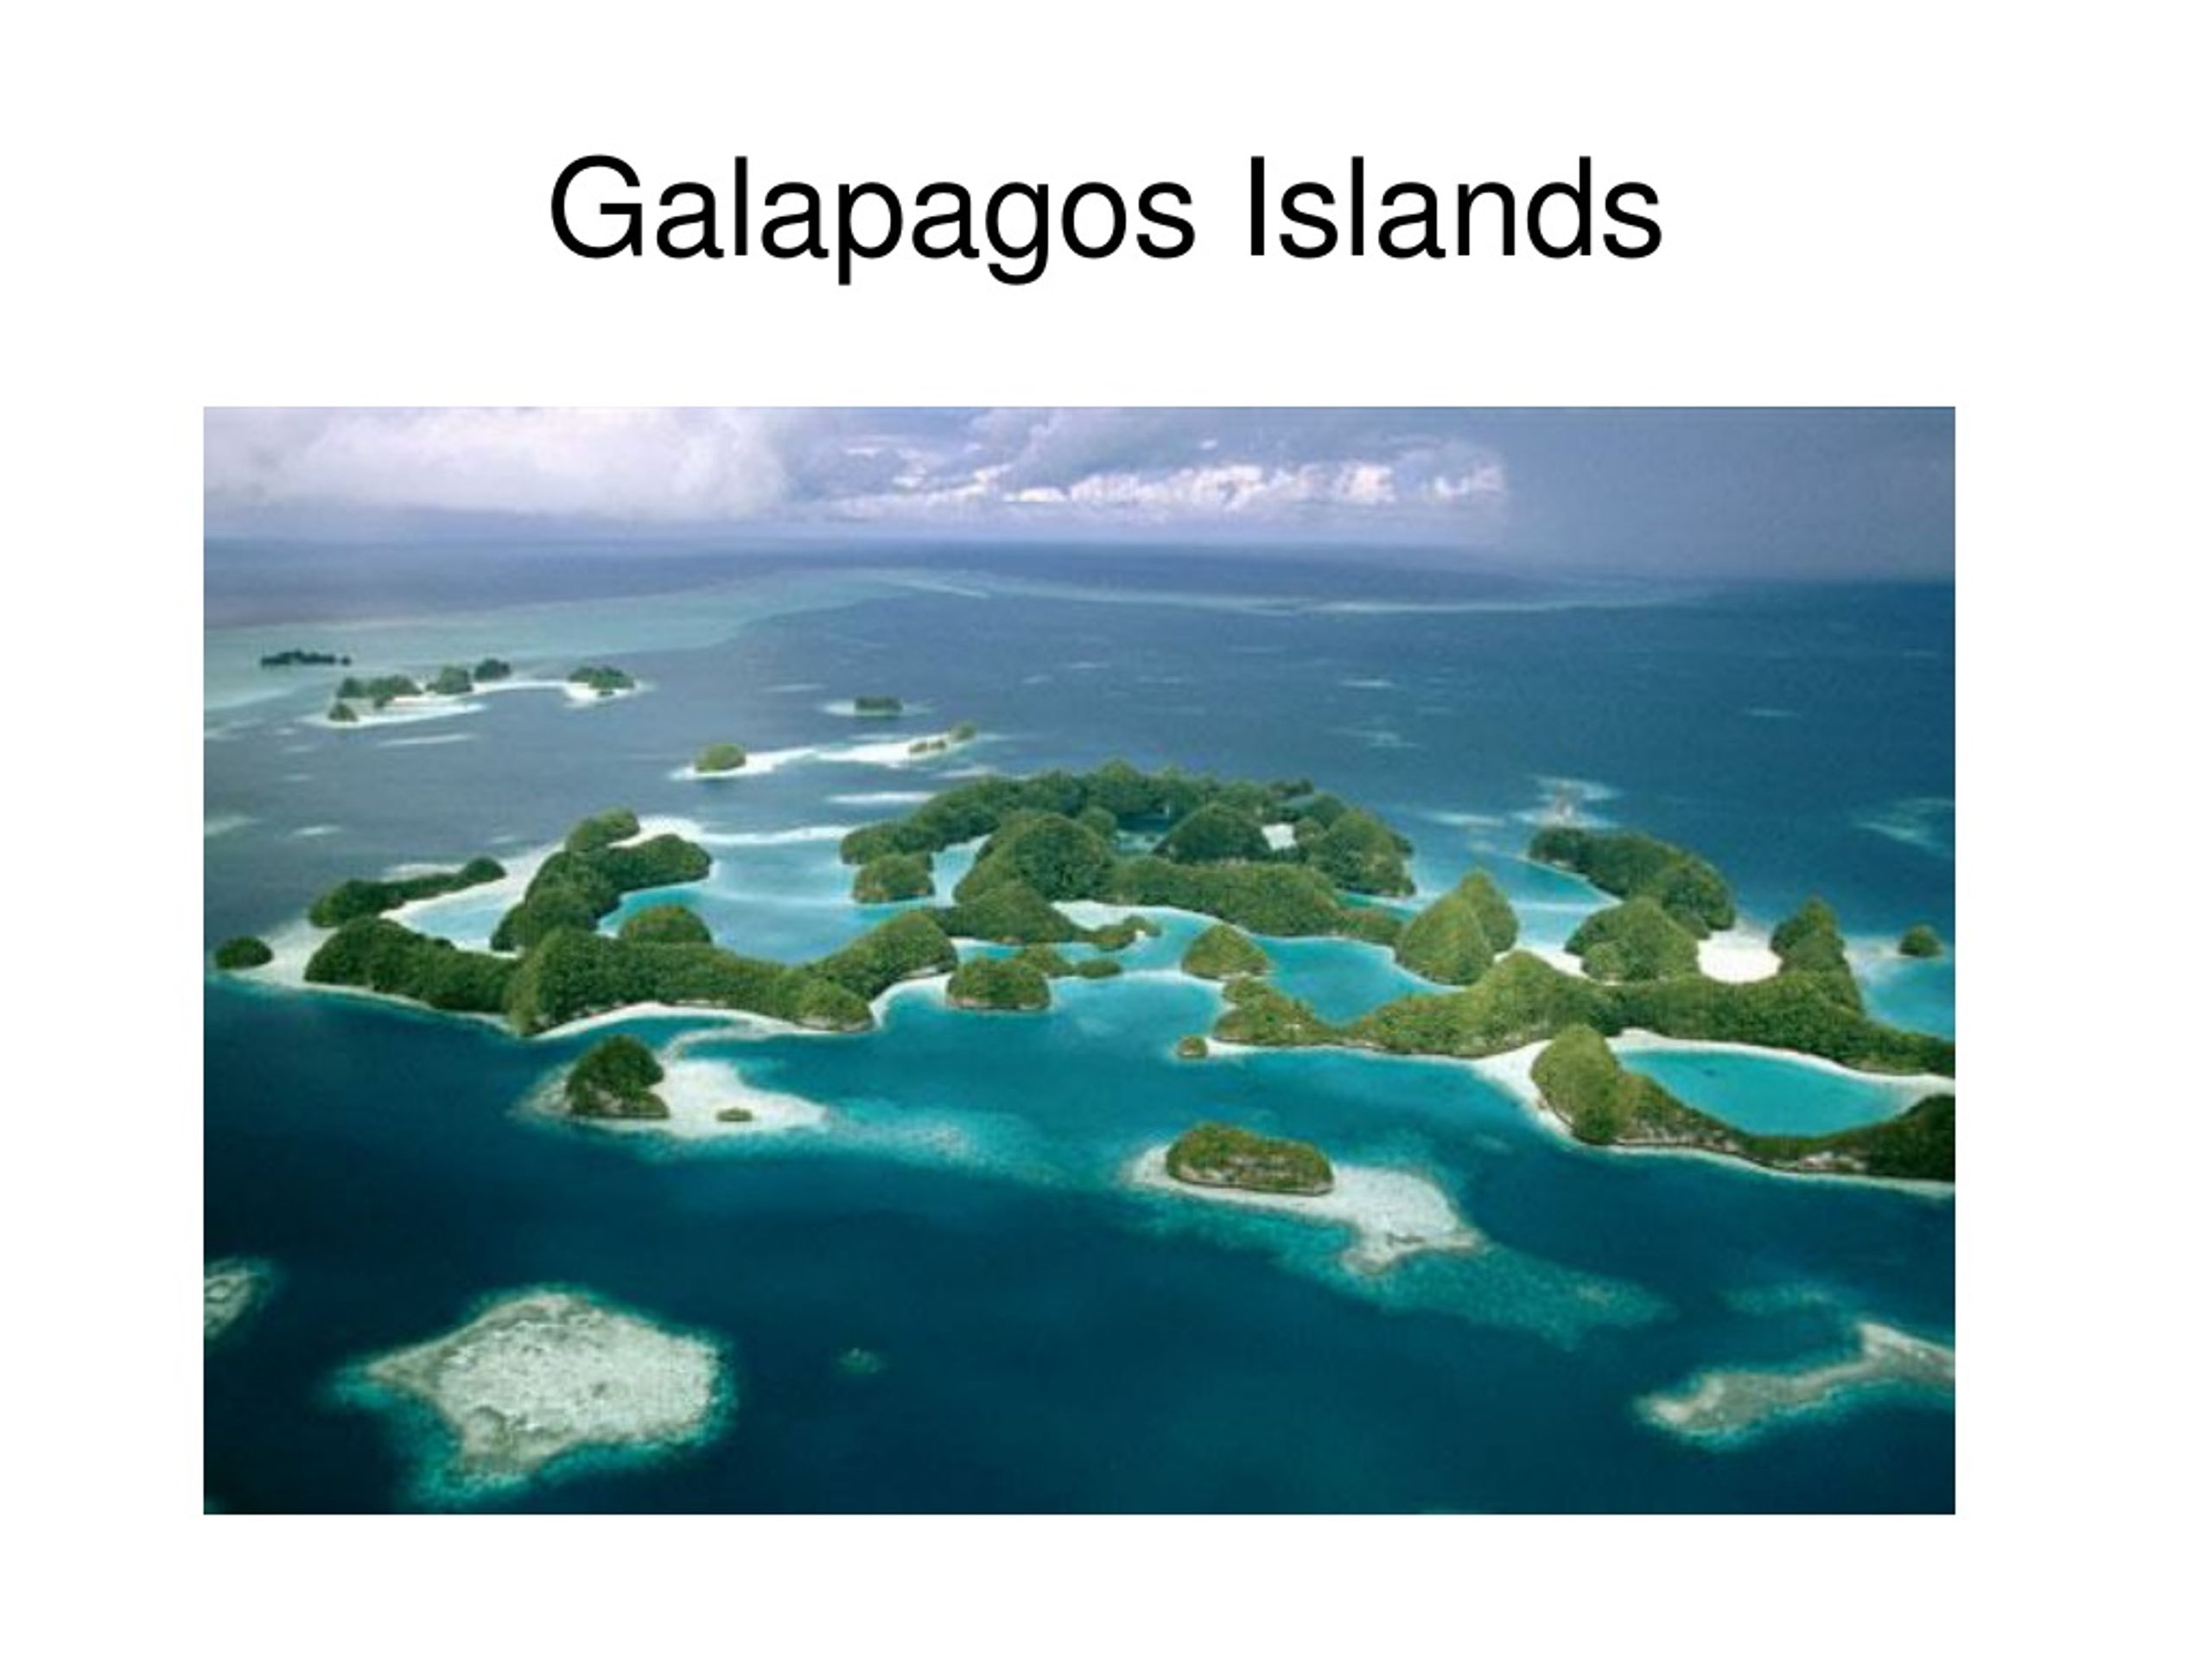 Группа островов в западной части тихого океана. Эквадор Галапагосские острова. Национальный парк Галапагосских островов, Эквадор. Архипелаг Палау. 2. Галапагосские острова (Эквадор).